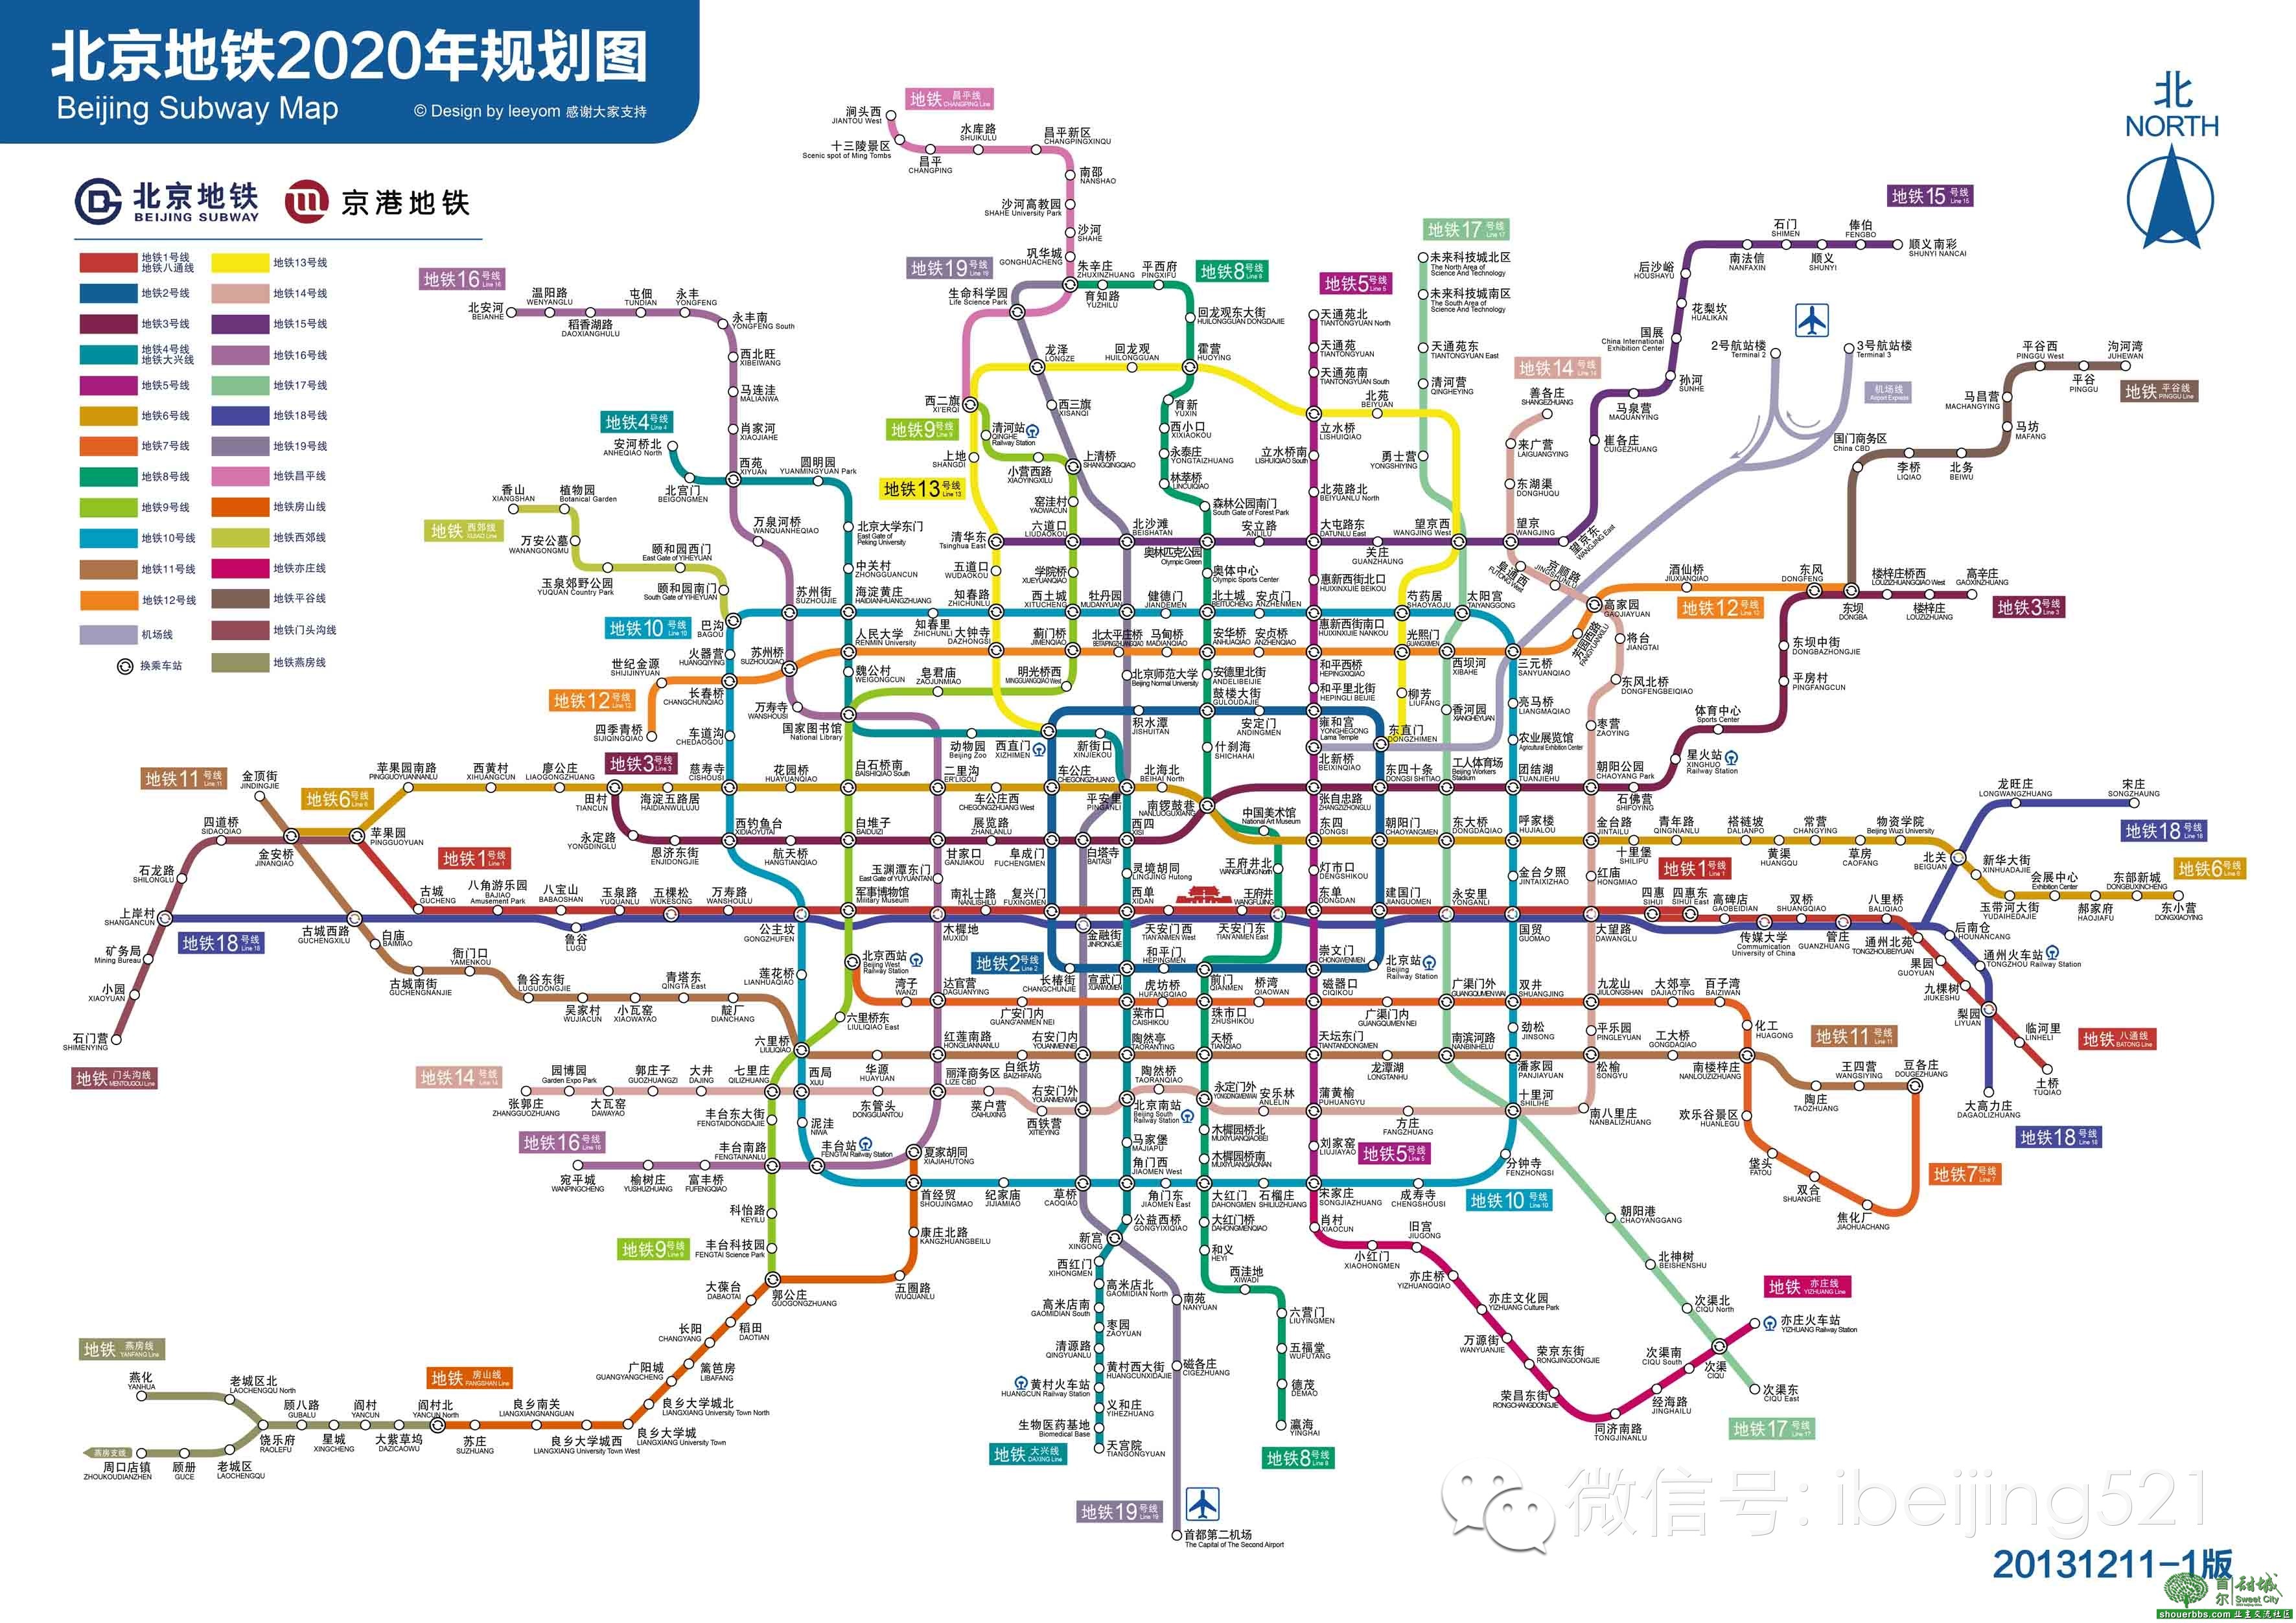 2020年北京地铁高清全图终于来了!_搜狐科技_搜狐网